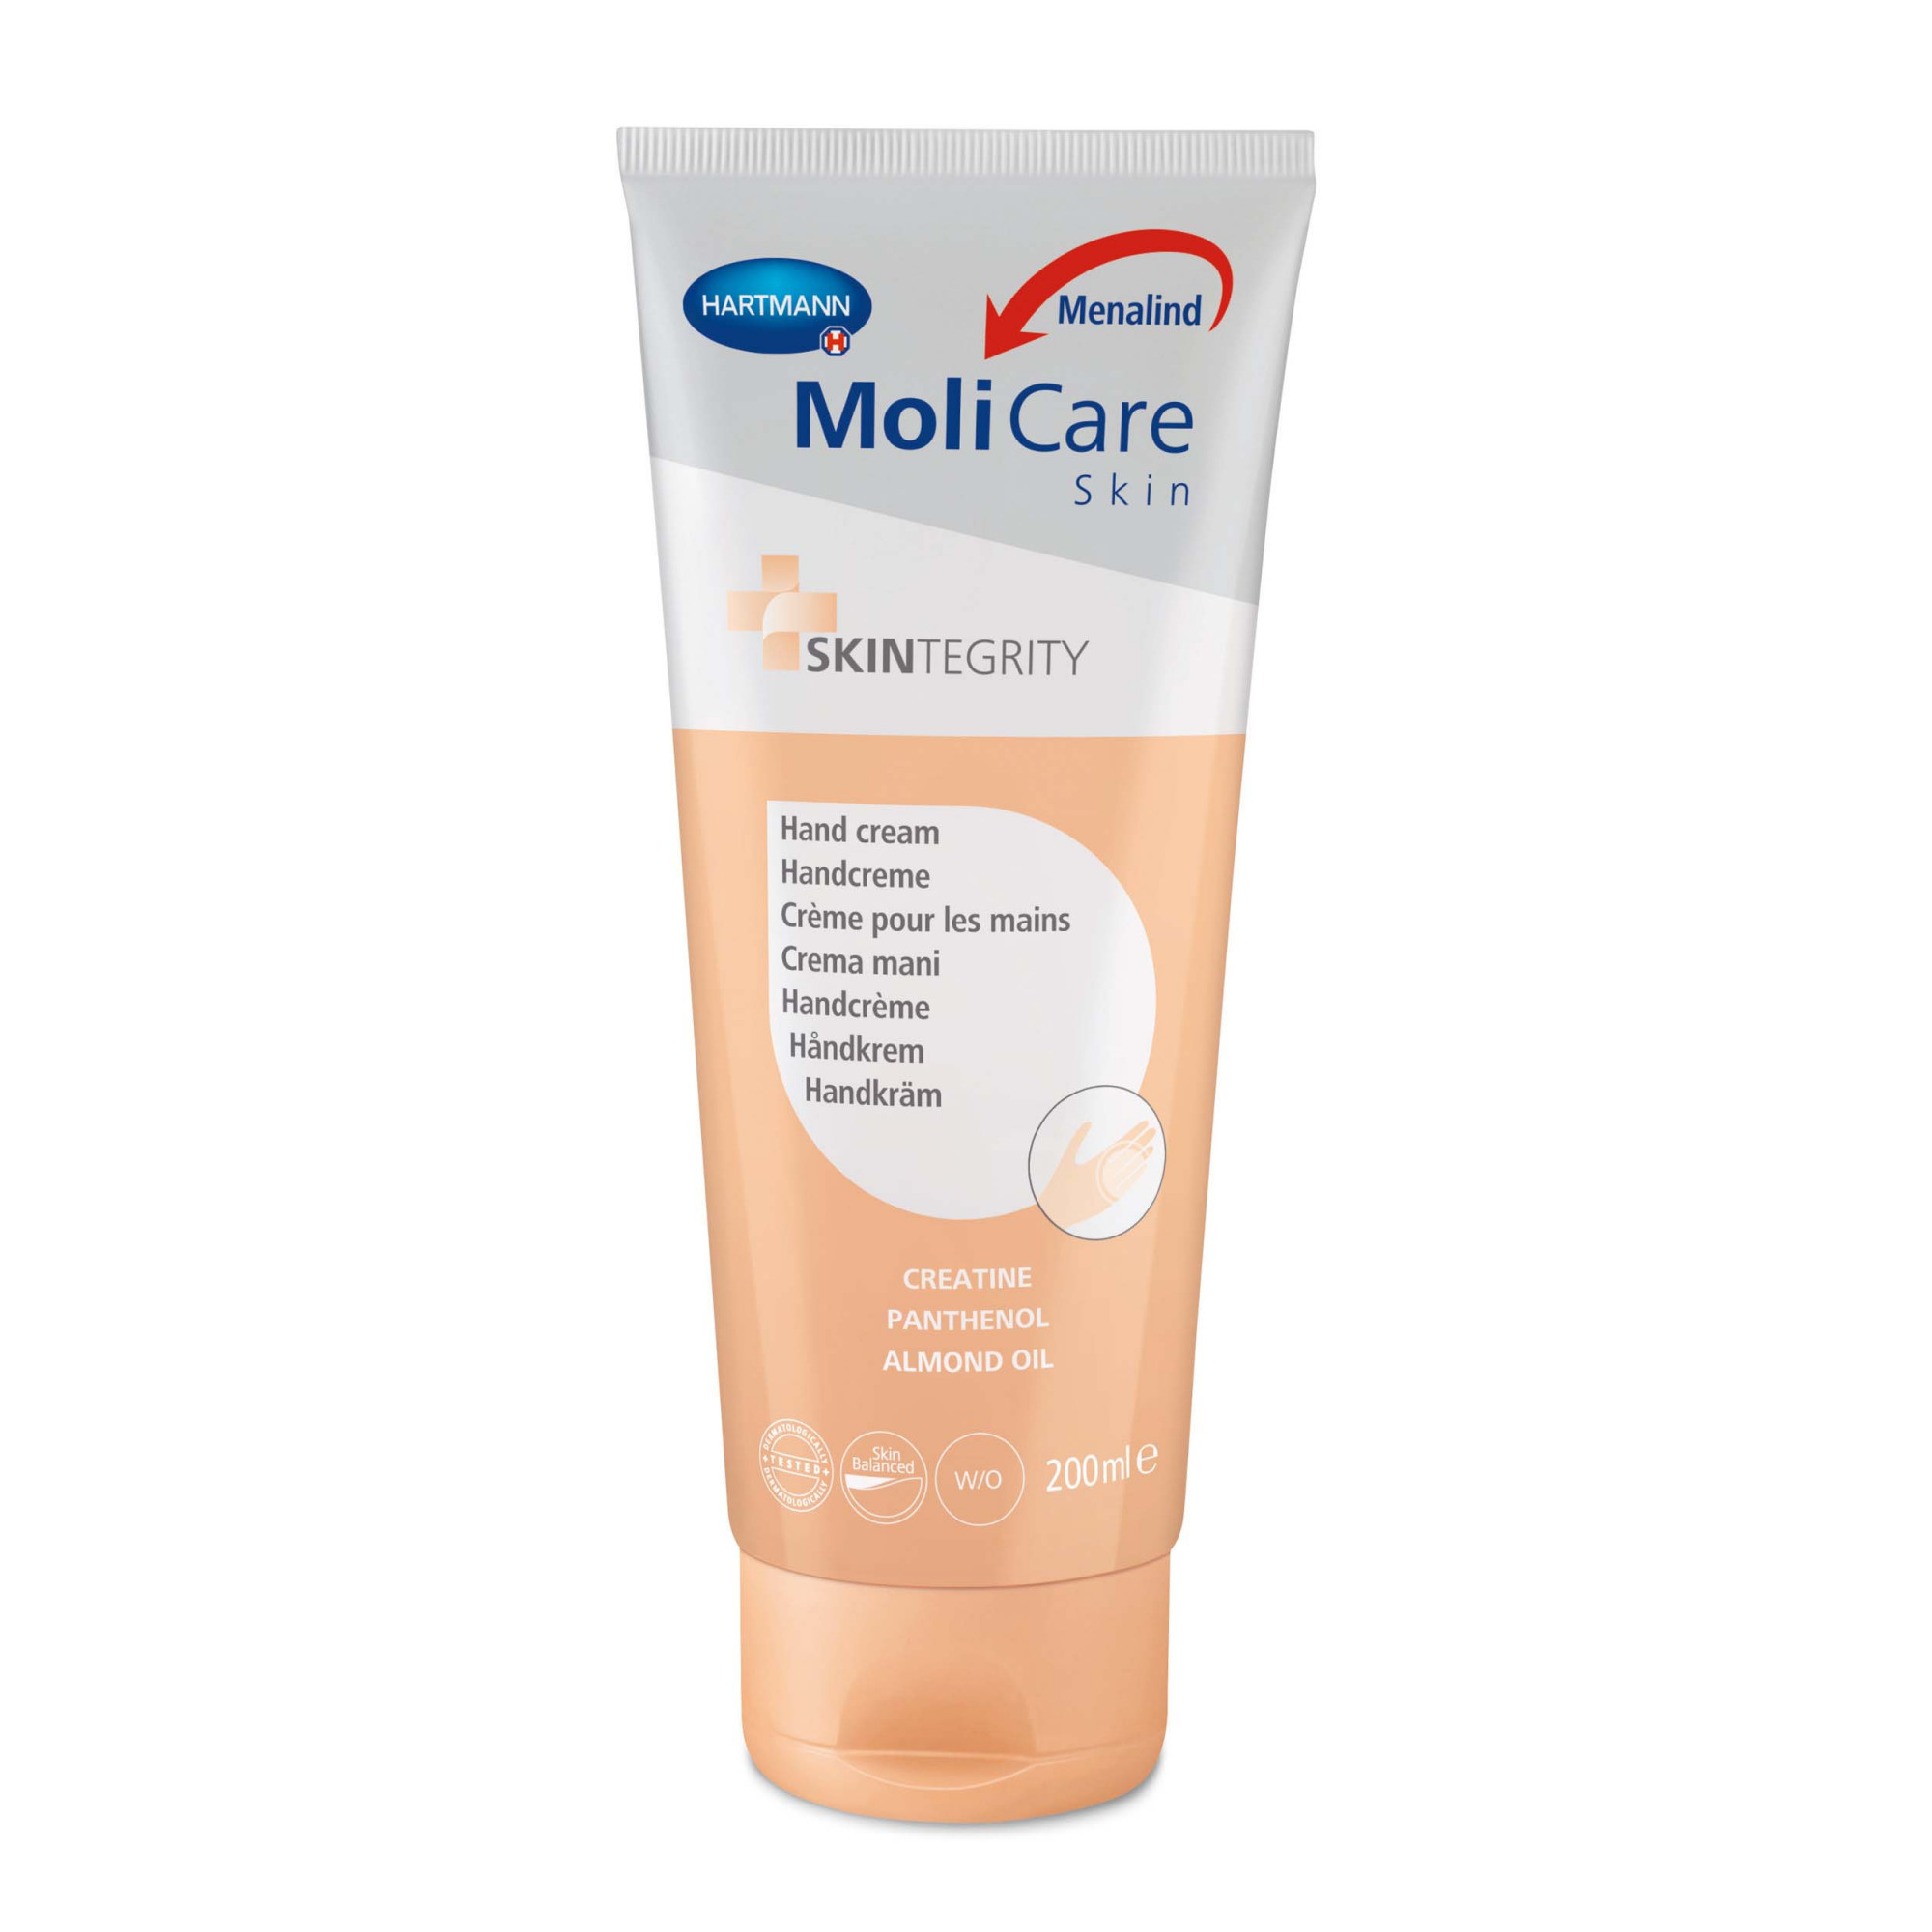 Crème Pour Les Mains 200ml - Molicare Skin Hydratation - Hartmann